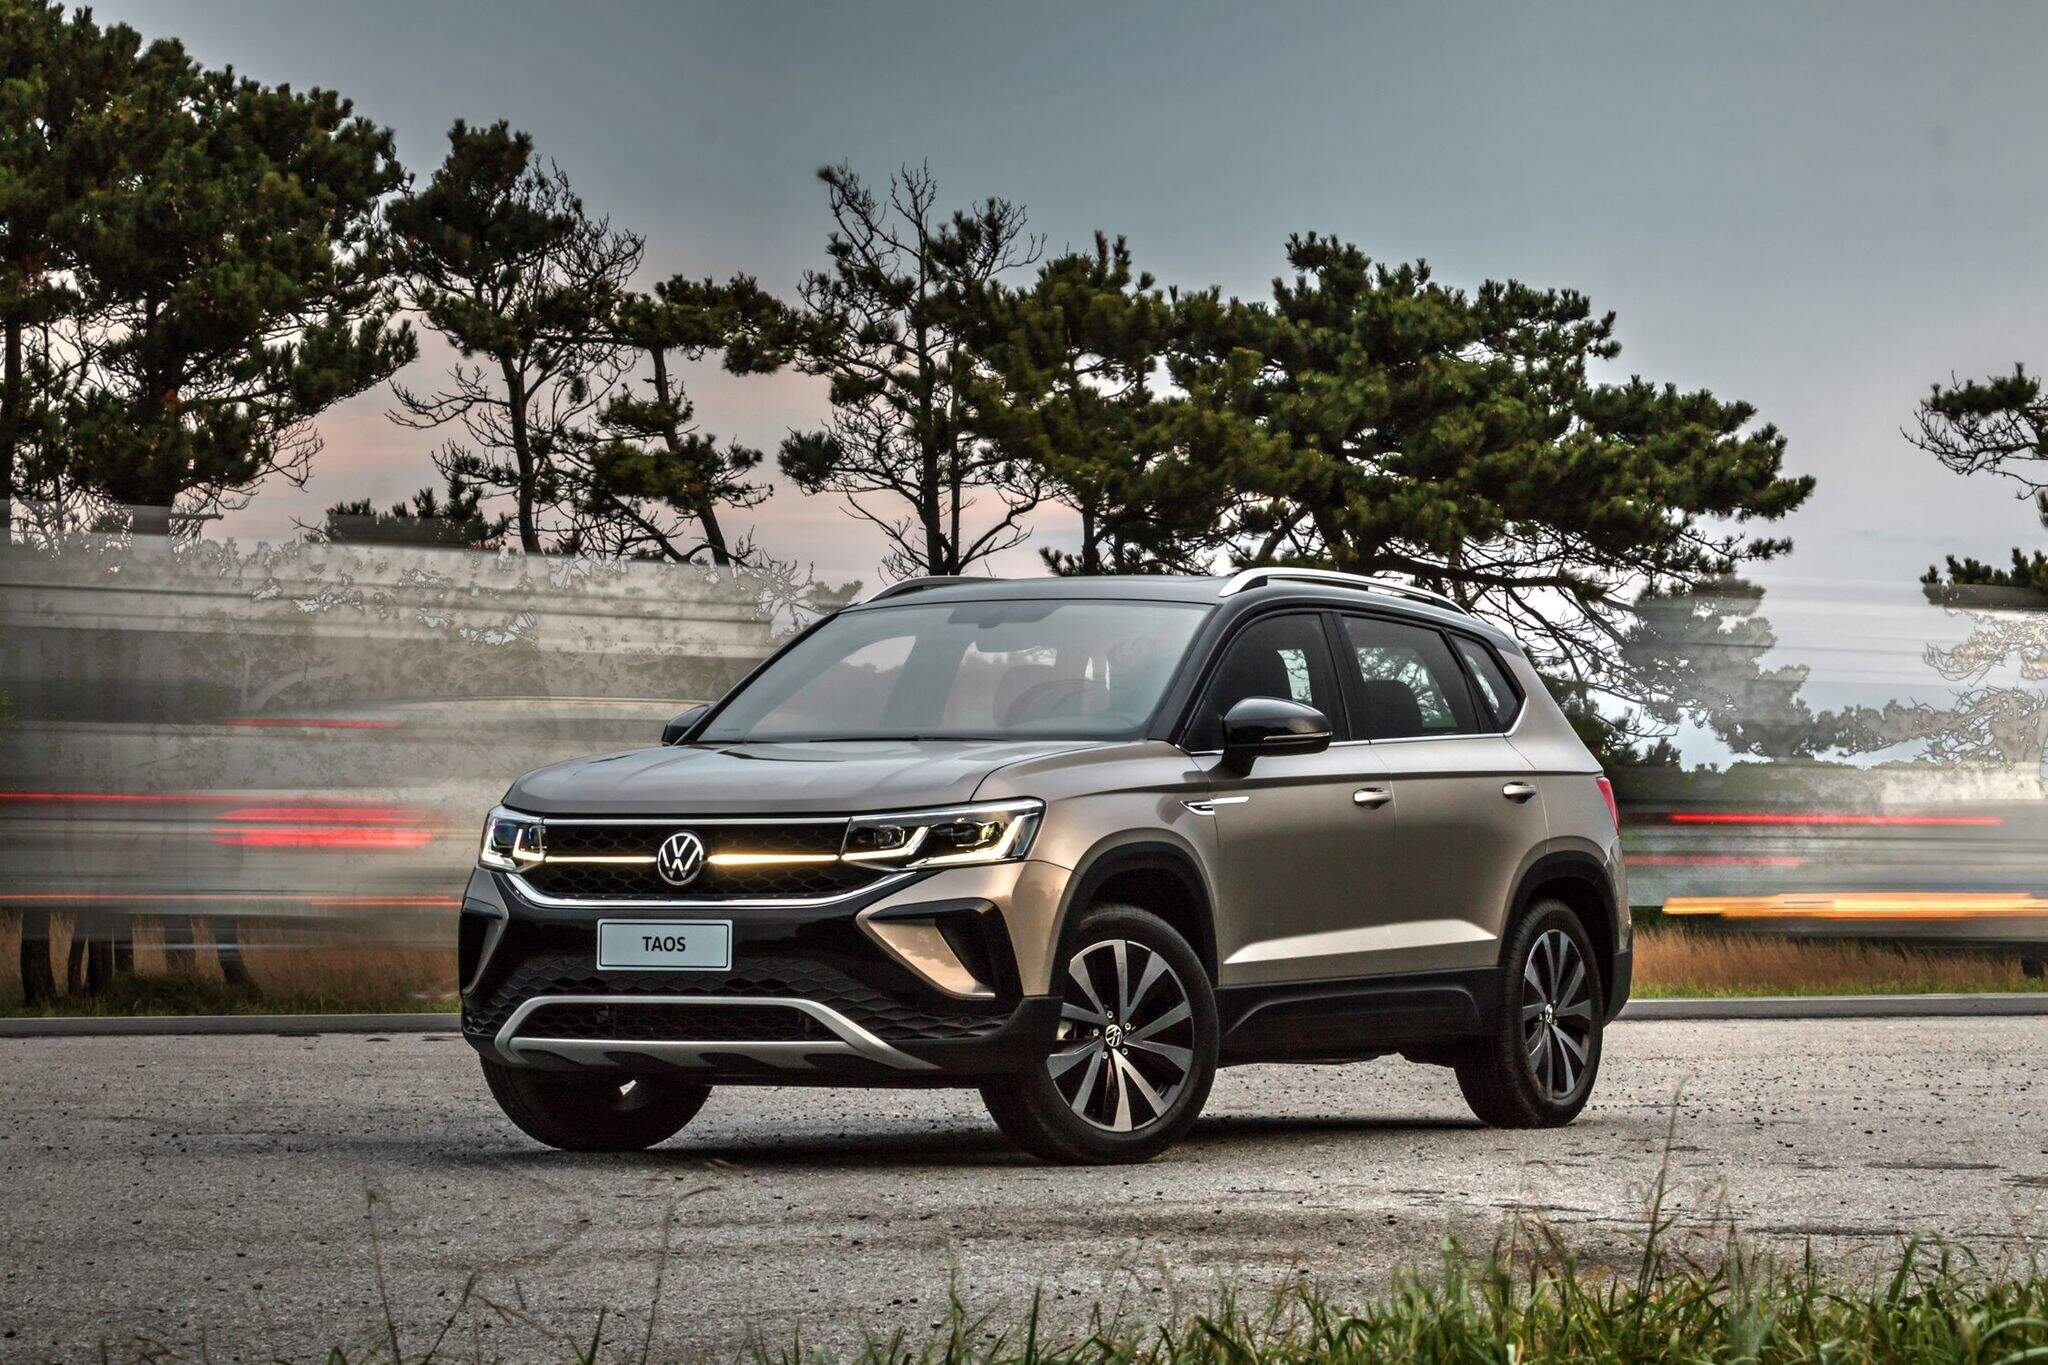 Lanzamiento de VW Taos y venta anticipada en pocos minutos – Vehículos